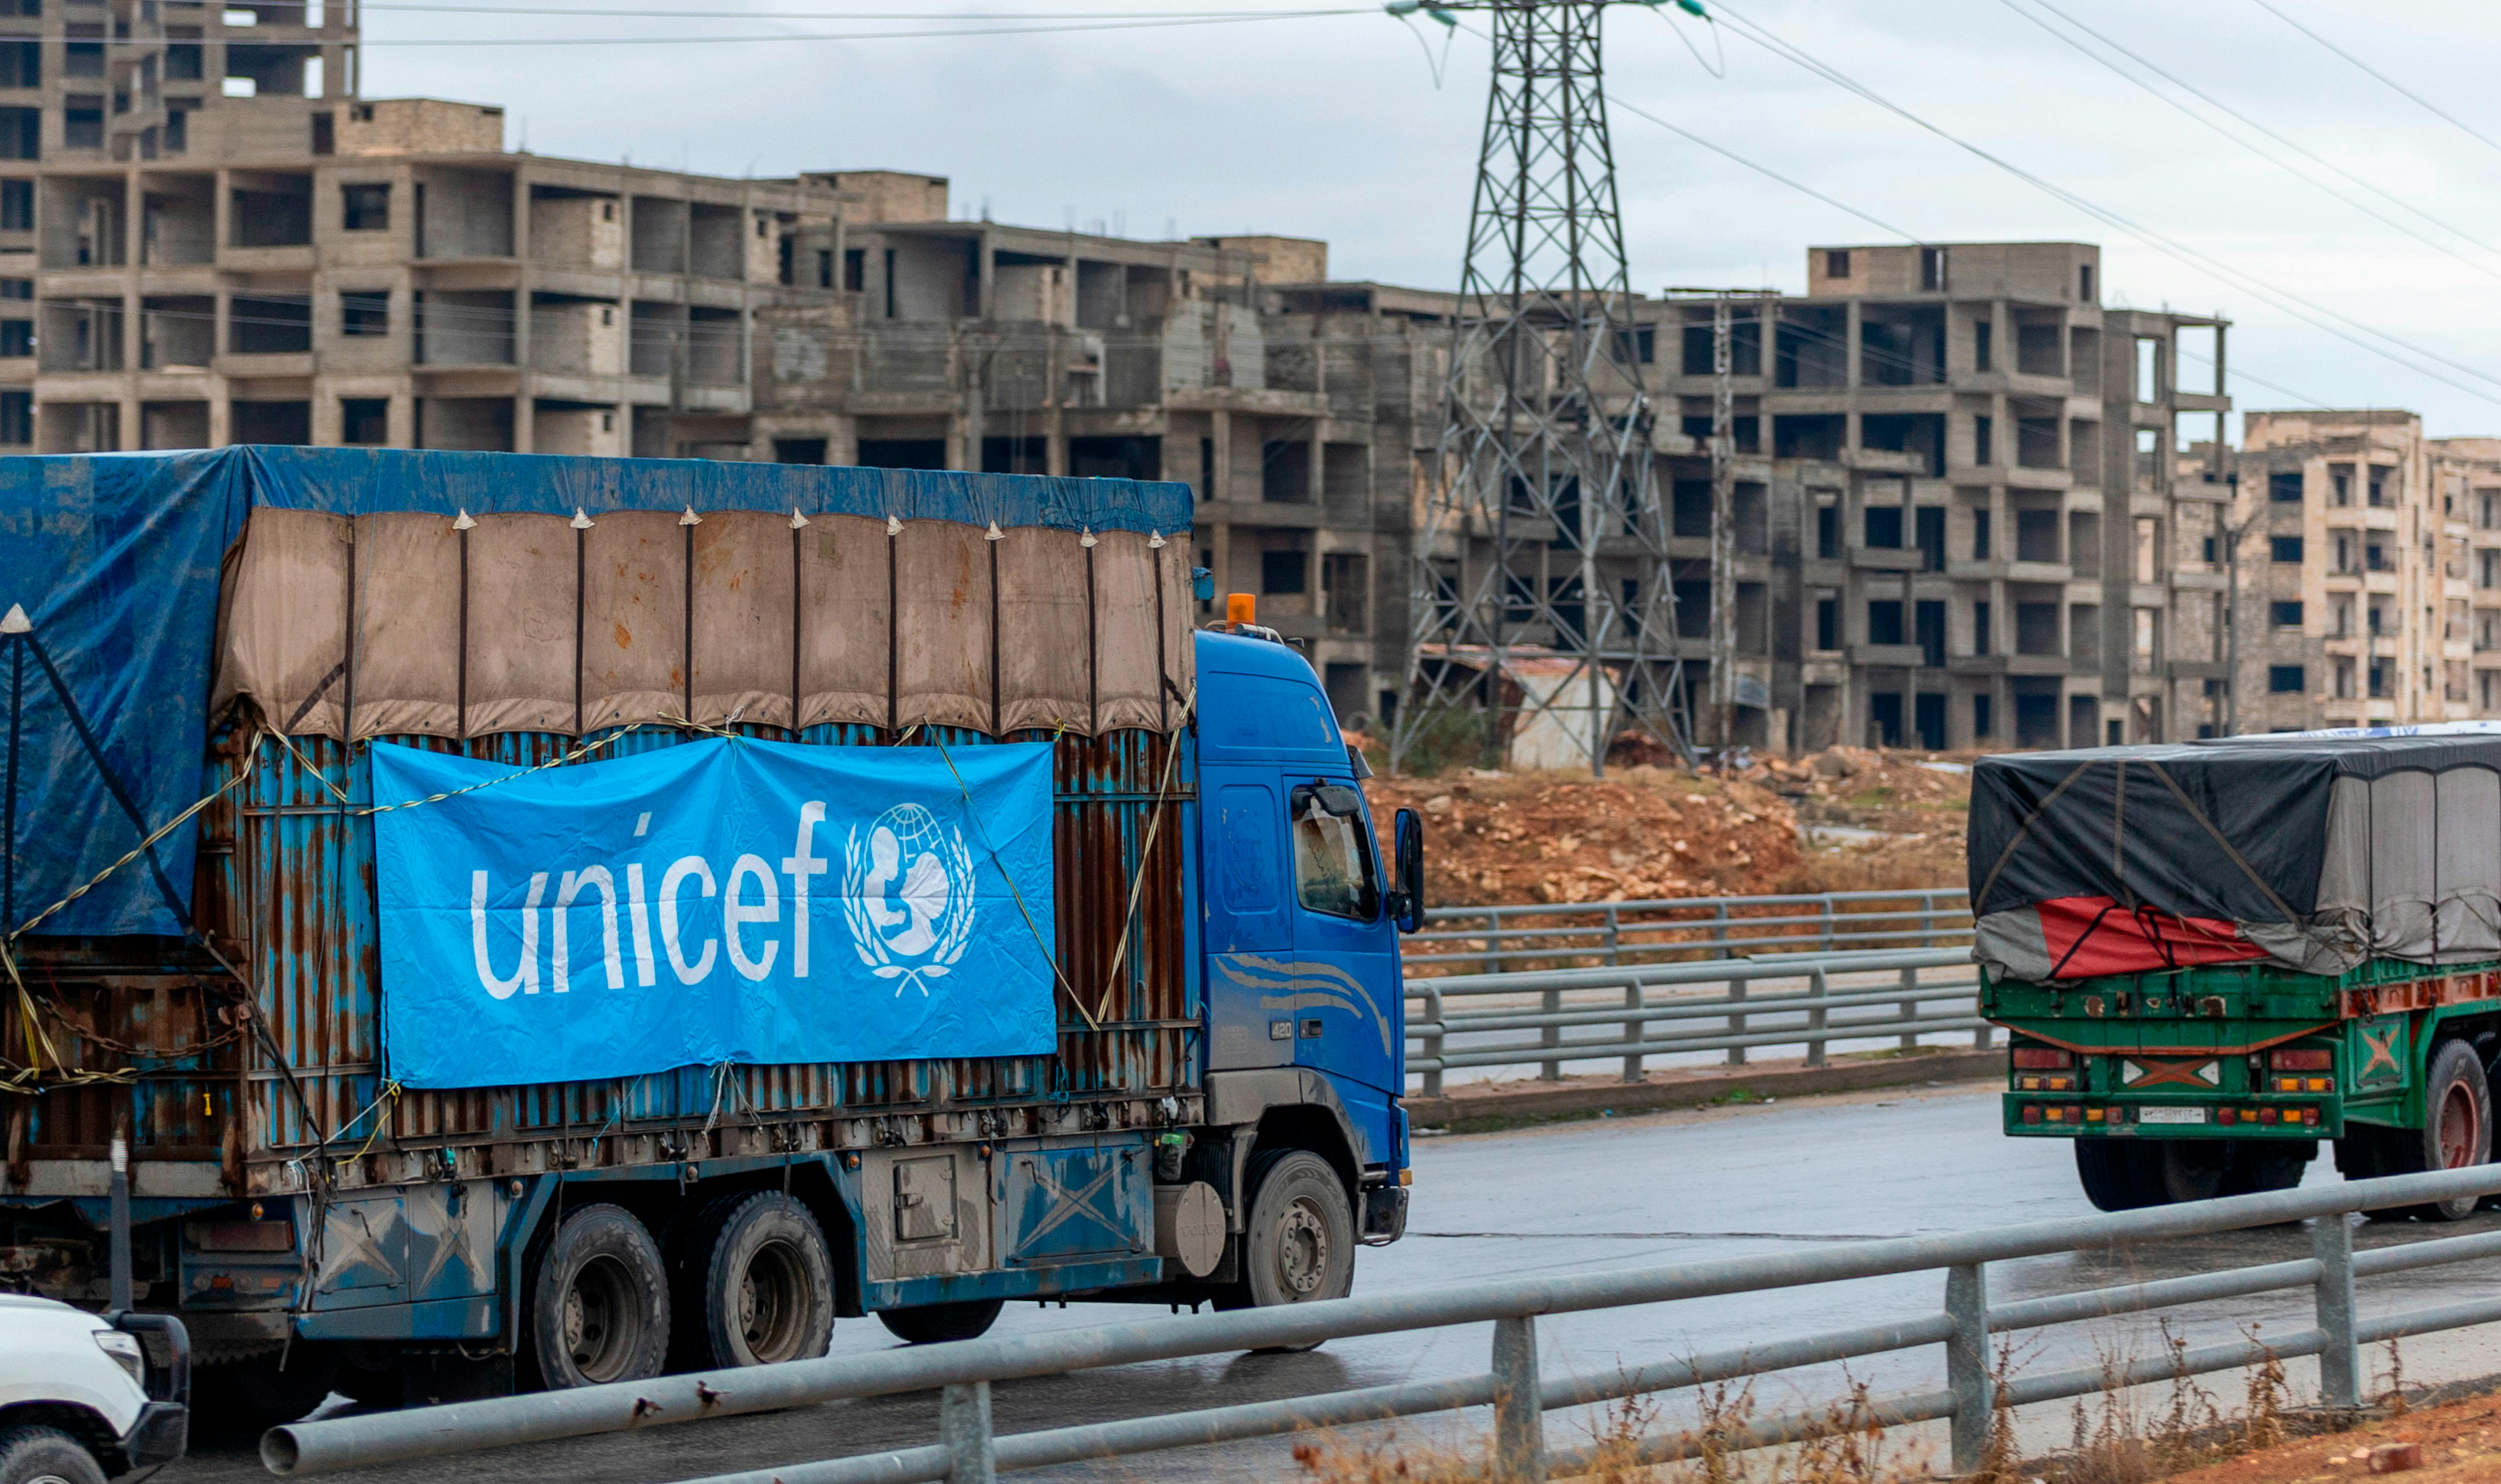 L'UNICEF, insieme alle altre agenzie delle Nazioni Unite, ha partecipato al 9° convoglio transfrontaliero di assistenza umanitaria nel nord-ovest della Siria